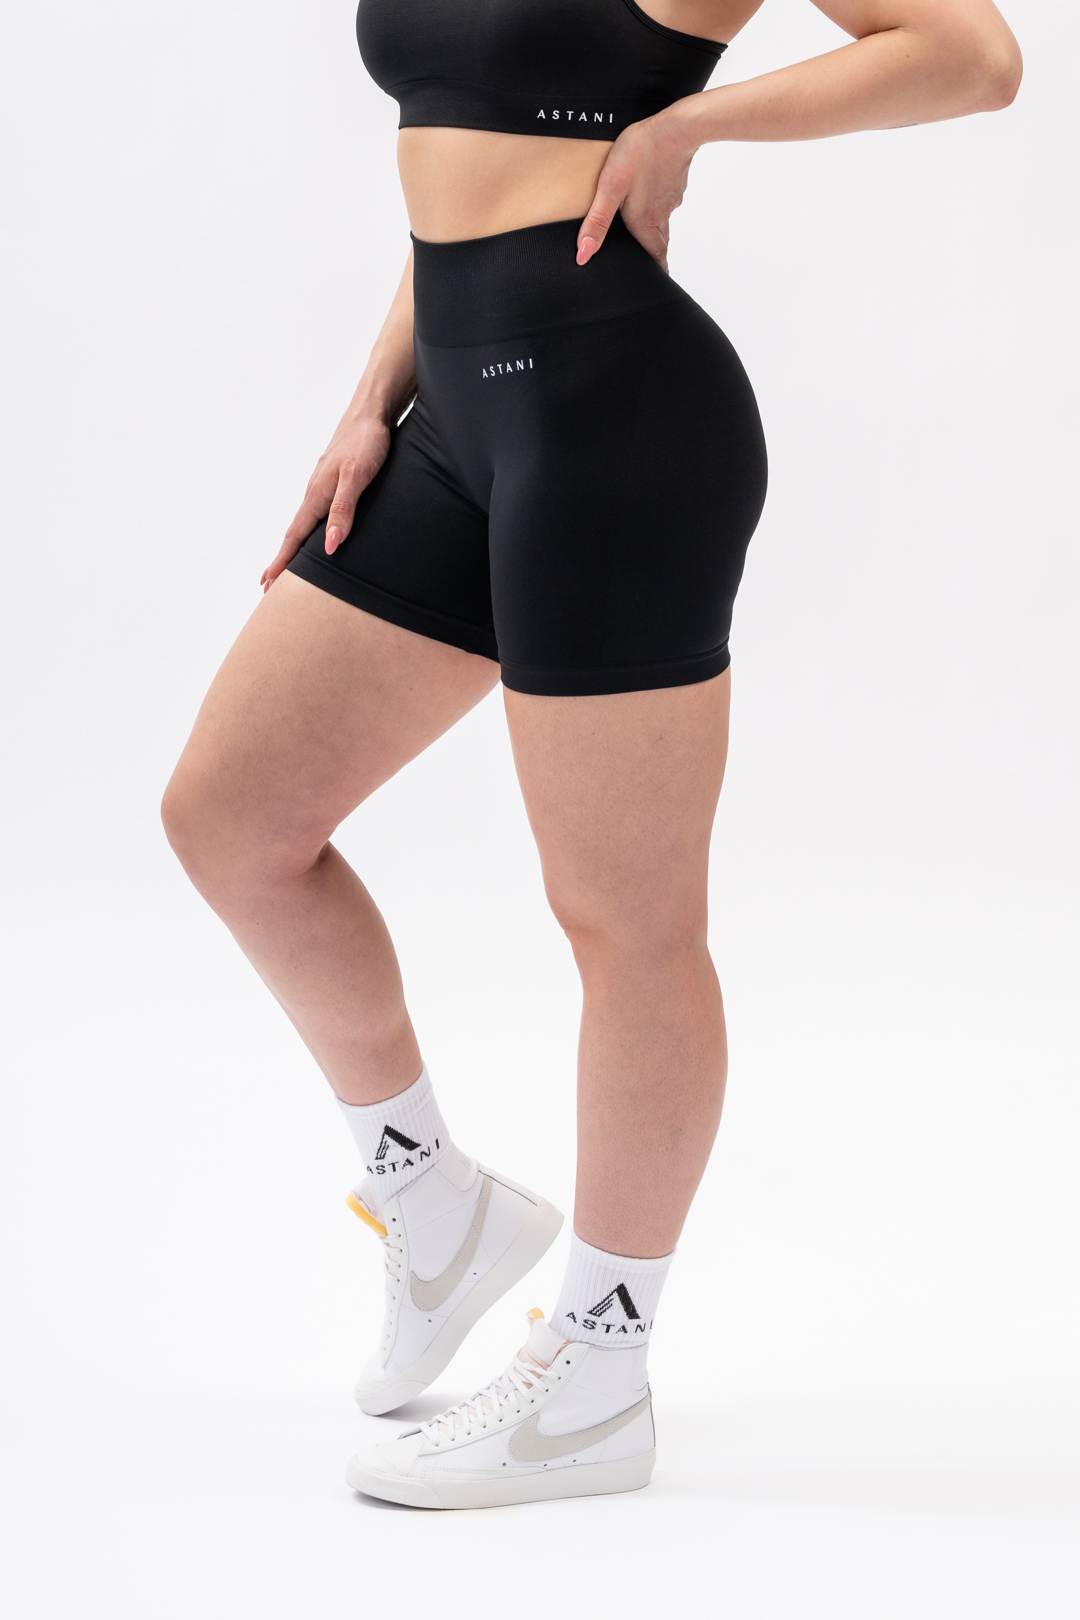 https://www.astaniwear.com/wp-content/uploads/2023/05/Bliss-Black-Scrunch-Shorts-3.jpg